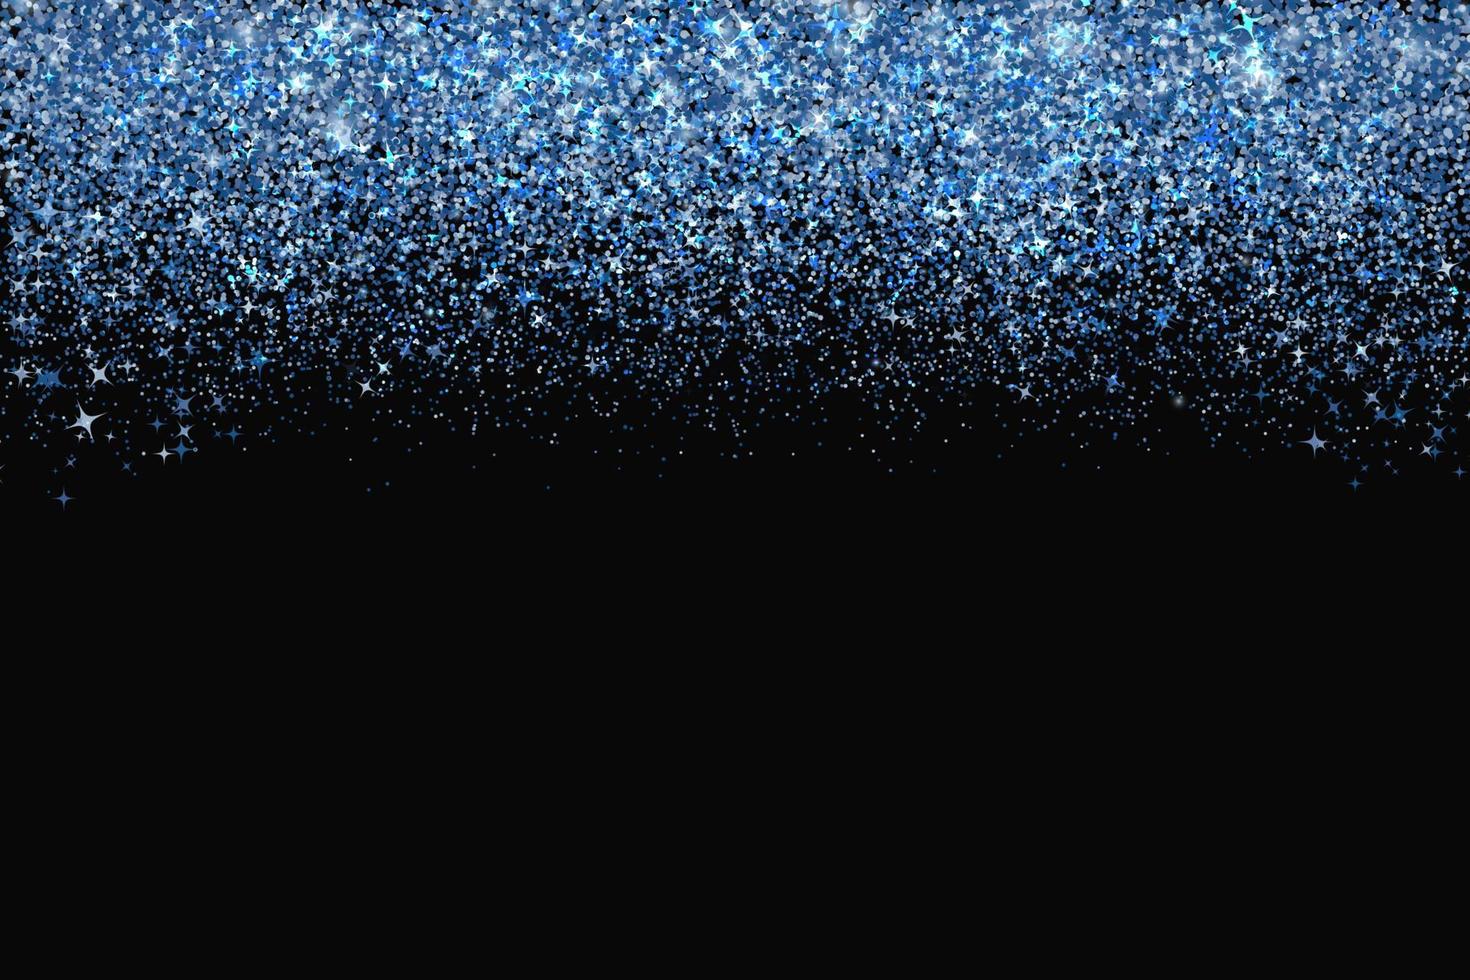 konfetti in schattierungen der klassischen blauen grenze isoliert auf schwarz. fallende funkelt punkte. glänzender Staubvektorhintergrund. die Farbe des Jahres 2020. schattierungen von blauem glitzertextureffekt. einfach zu bearbeitende Vorlage. vektor